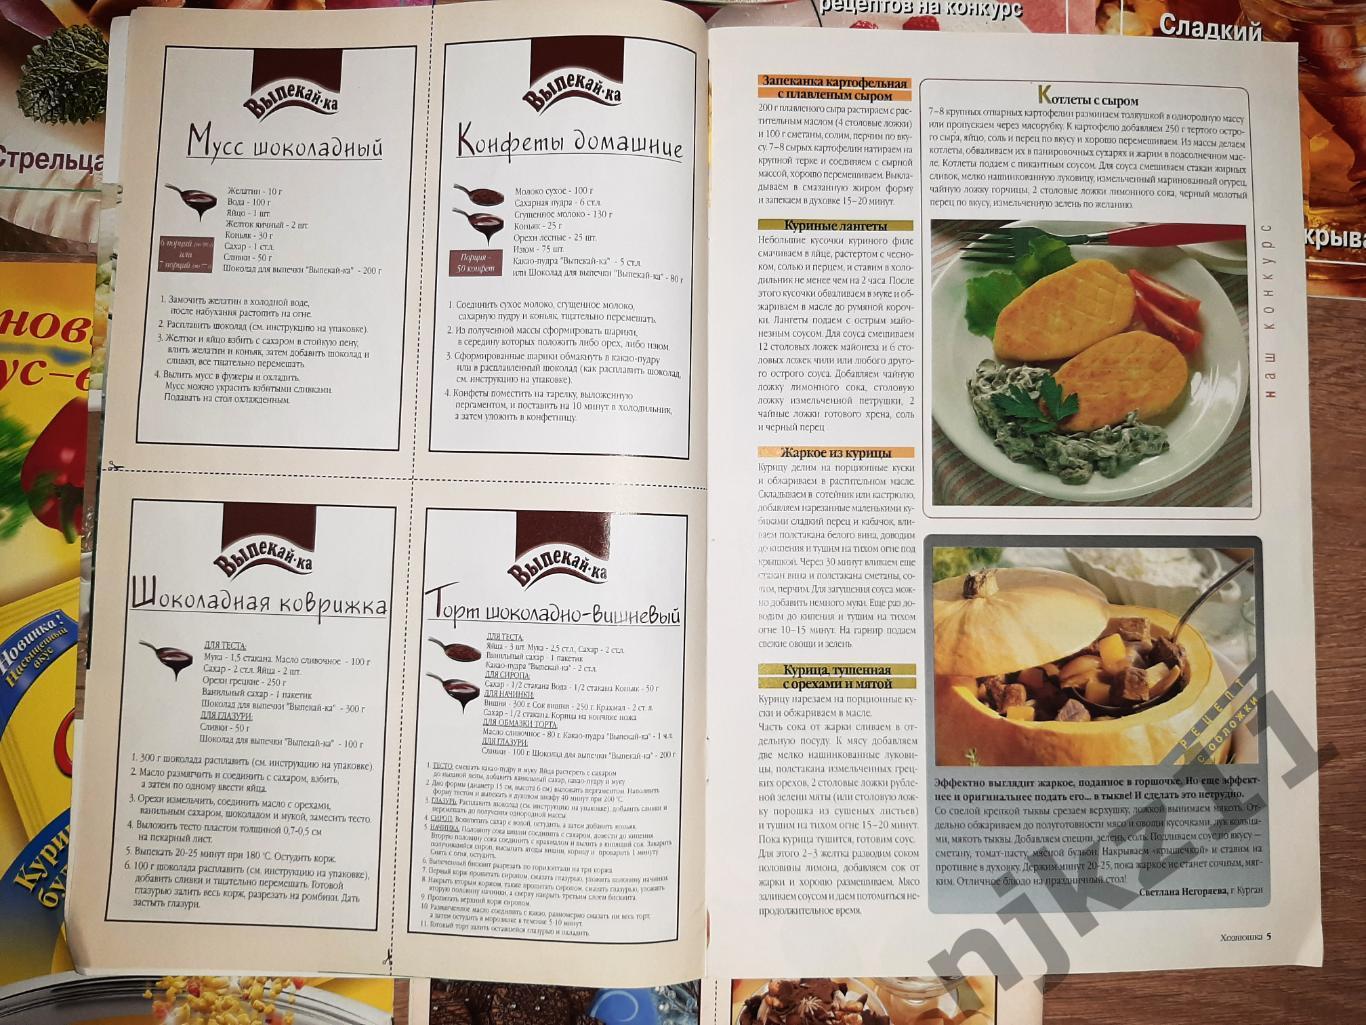 7 журналов ХОЗЯЮШКА приложение к Крестьянке 2001-03г.г. рецепты блюд 5